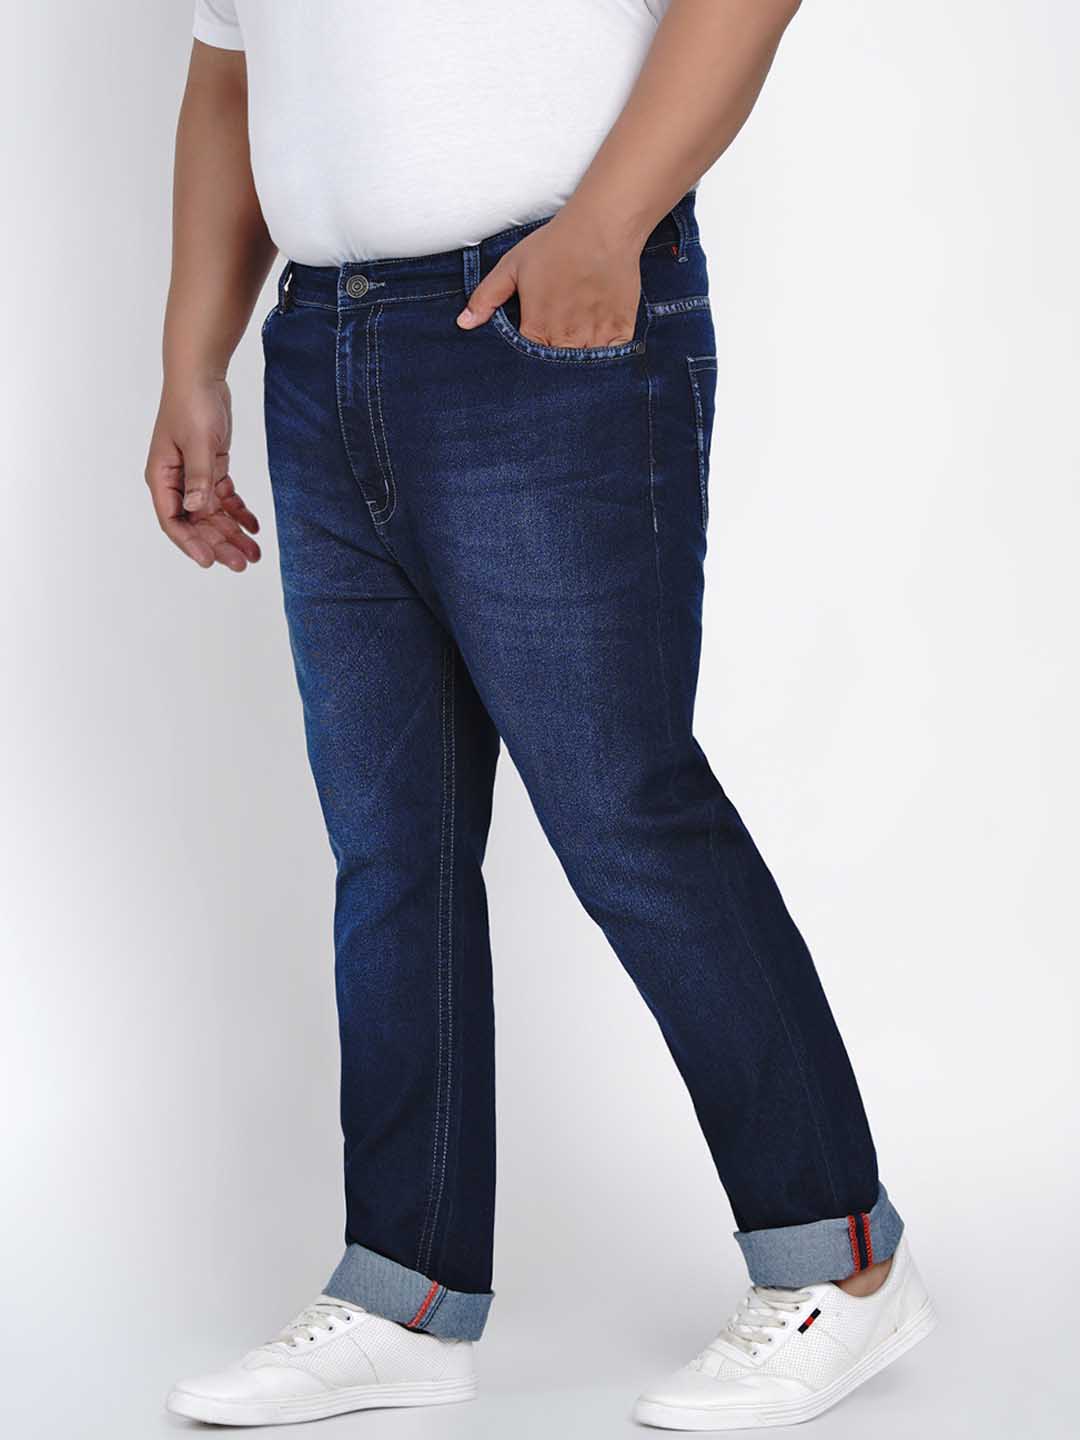 affordables/jeans/JPJ2007/jpj2007-4.jpg